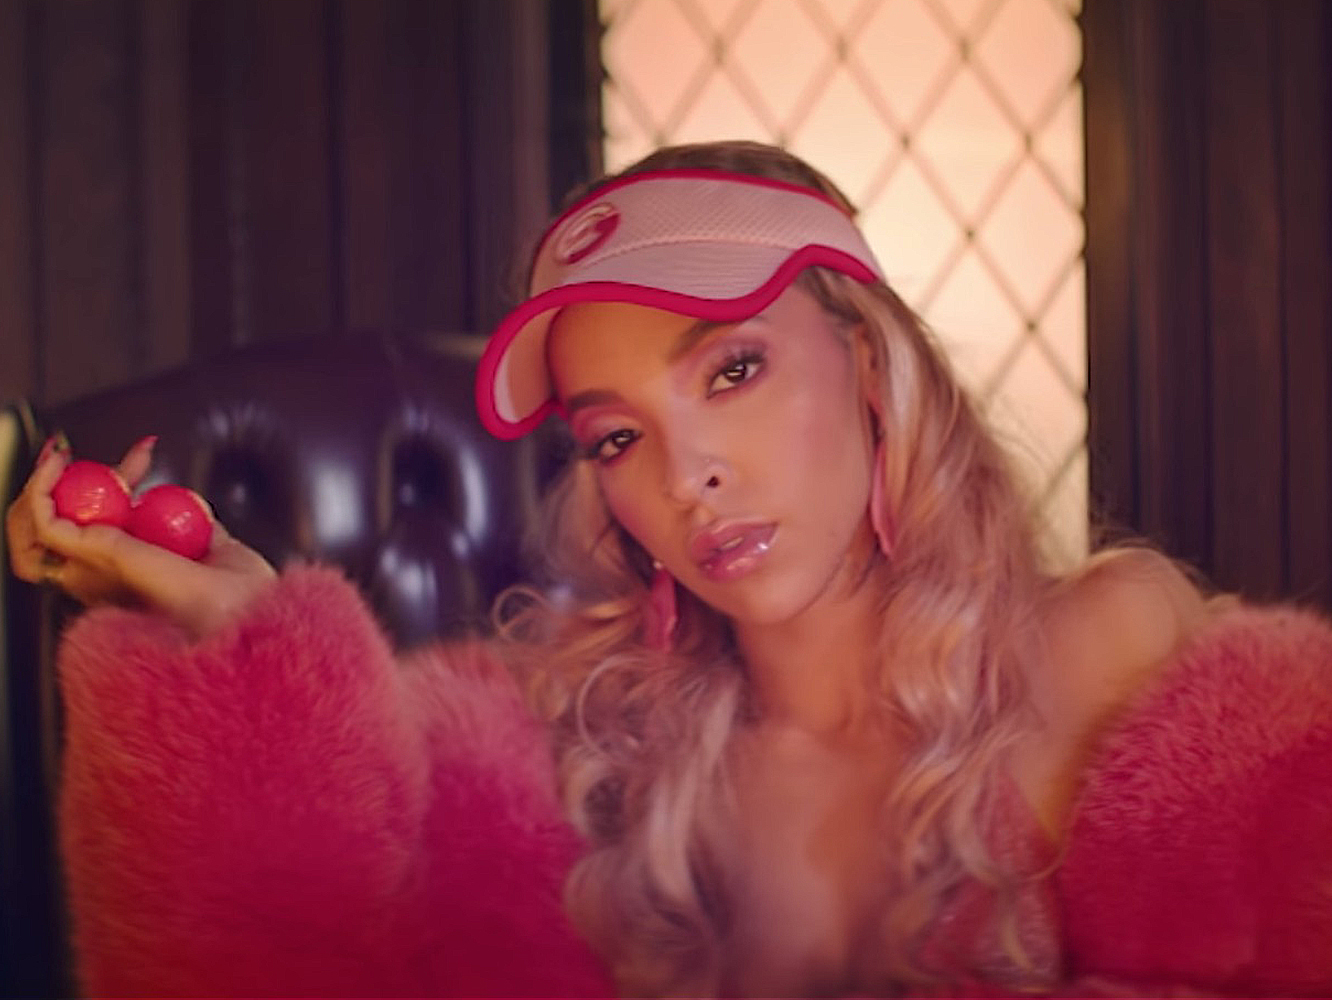  Punto, set y partido: Tinashe lanza el single y vídeo de ‘Me So Bad’ y el pre-order de ‘Joyride’